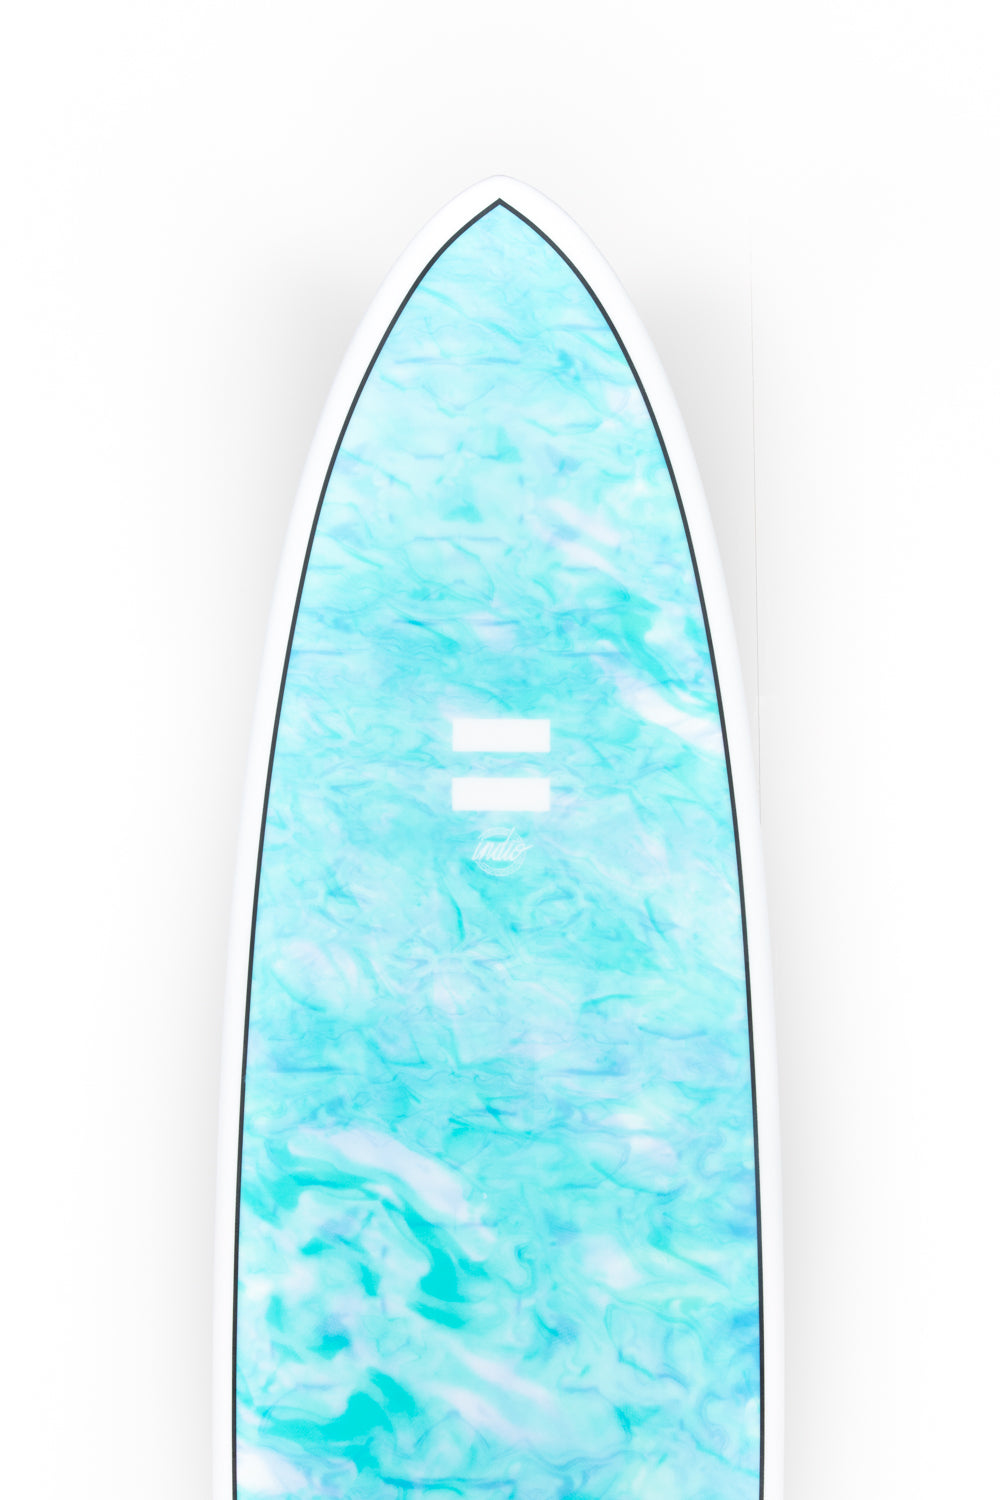 
                  
                    Pukas Surf Shop - Indio Endurance - THE EGG Swirl Effect Blue Mint - 7´10" x 23 1/4 x 3 - 64L
                  
                